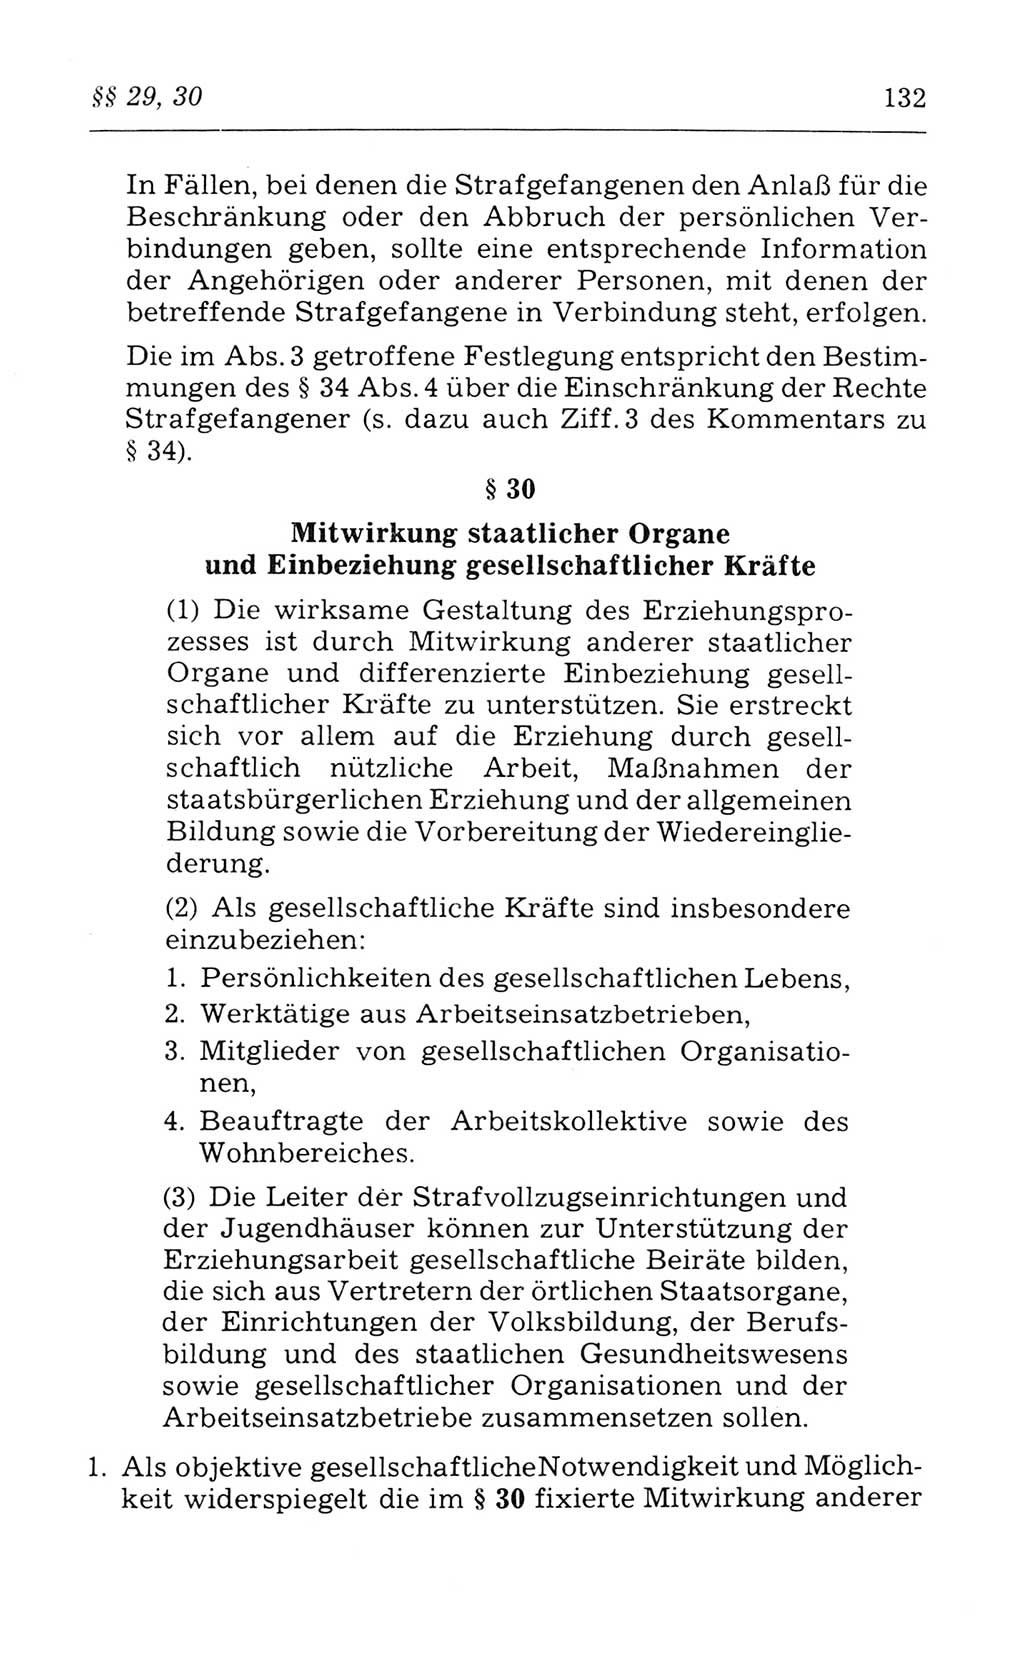 Kommentar zum Strafvollzugsgesetz [(StVG) Deutsche Demokratische Republik (DDR)] 1980, Seite 132 (Komm. StVG DDR 1980, S. 132)